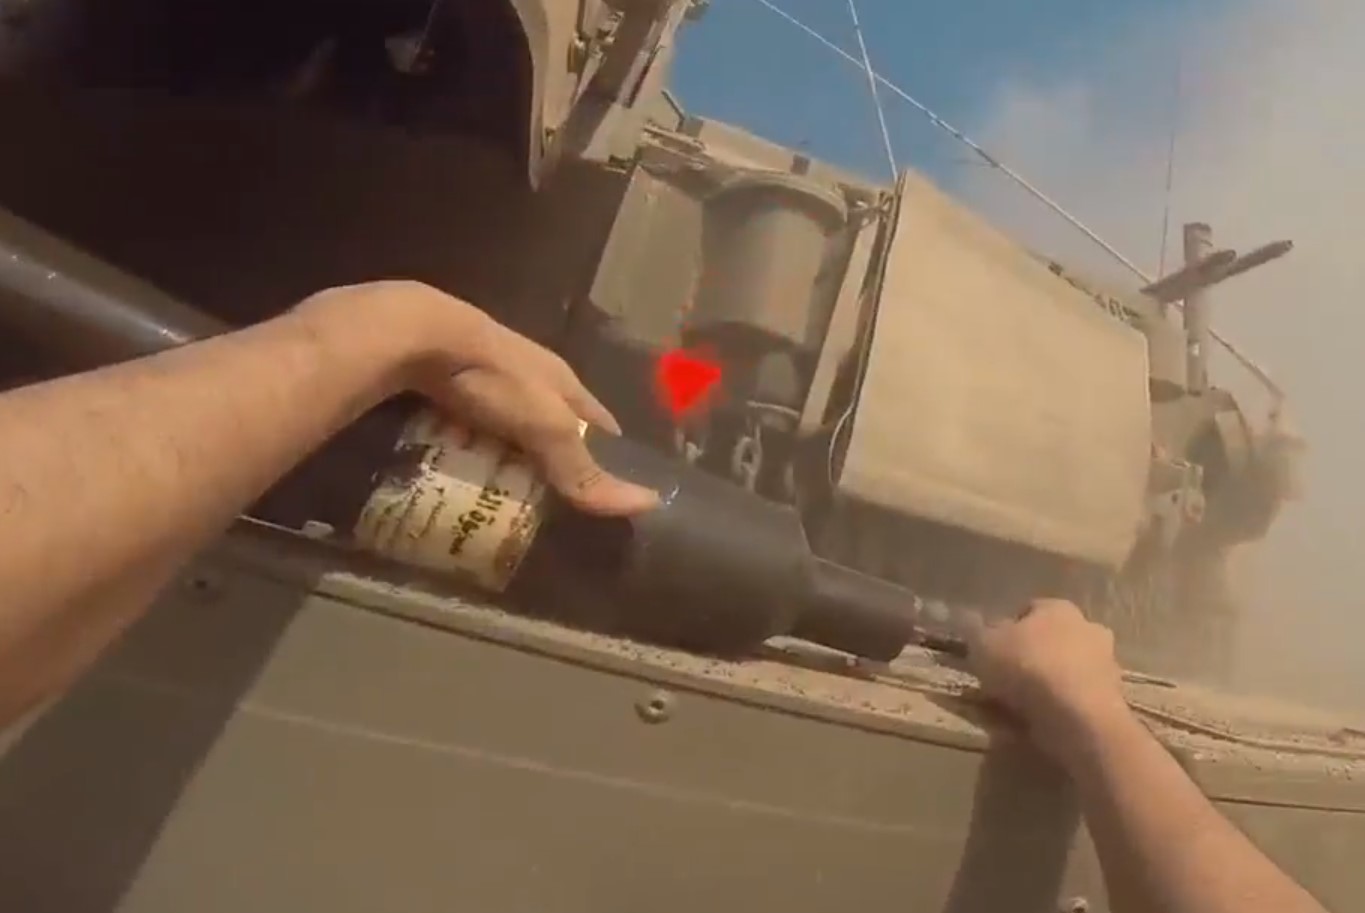 Βίντεο δείχνει μαχητή της Χαμάς να τοποθετεί με γυμνά χέρια νάρκη σε τανκ - «Απλά απίστευτο»